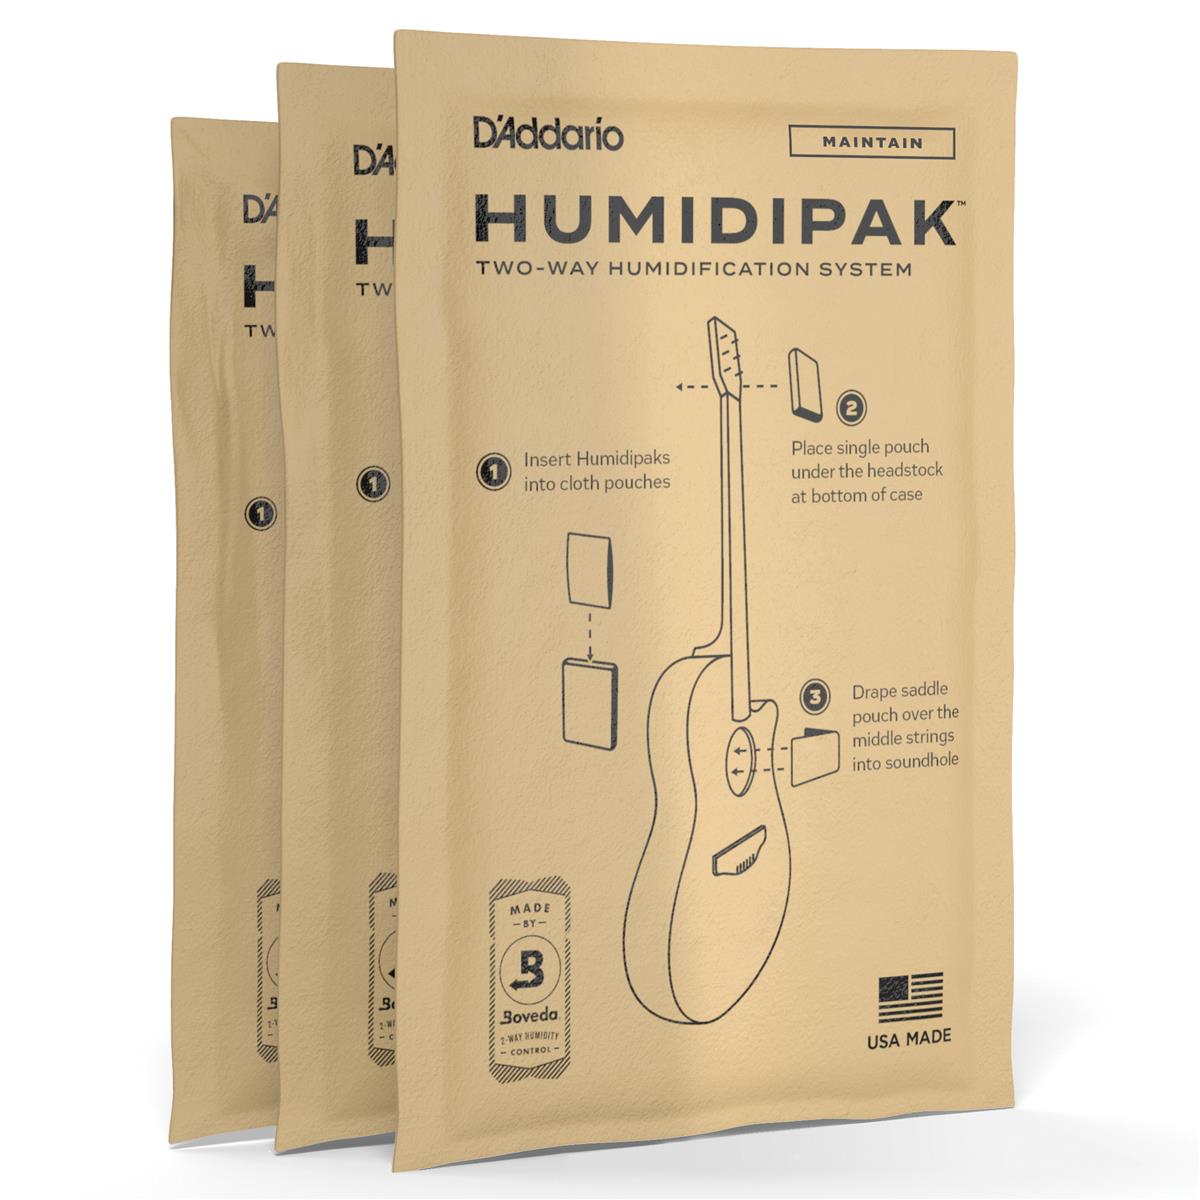 DAddario Humidipak Restore Двусторонние увлажняющие пакеты для увлажнения, 3 шт. в упаковке